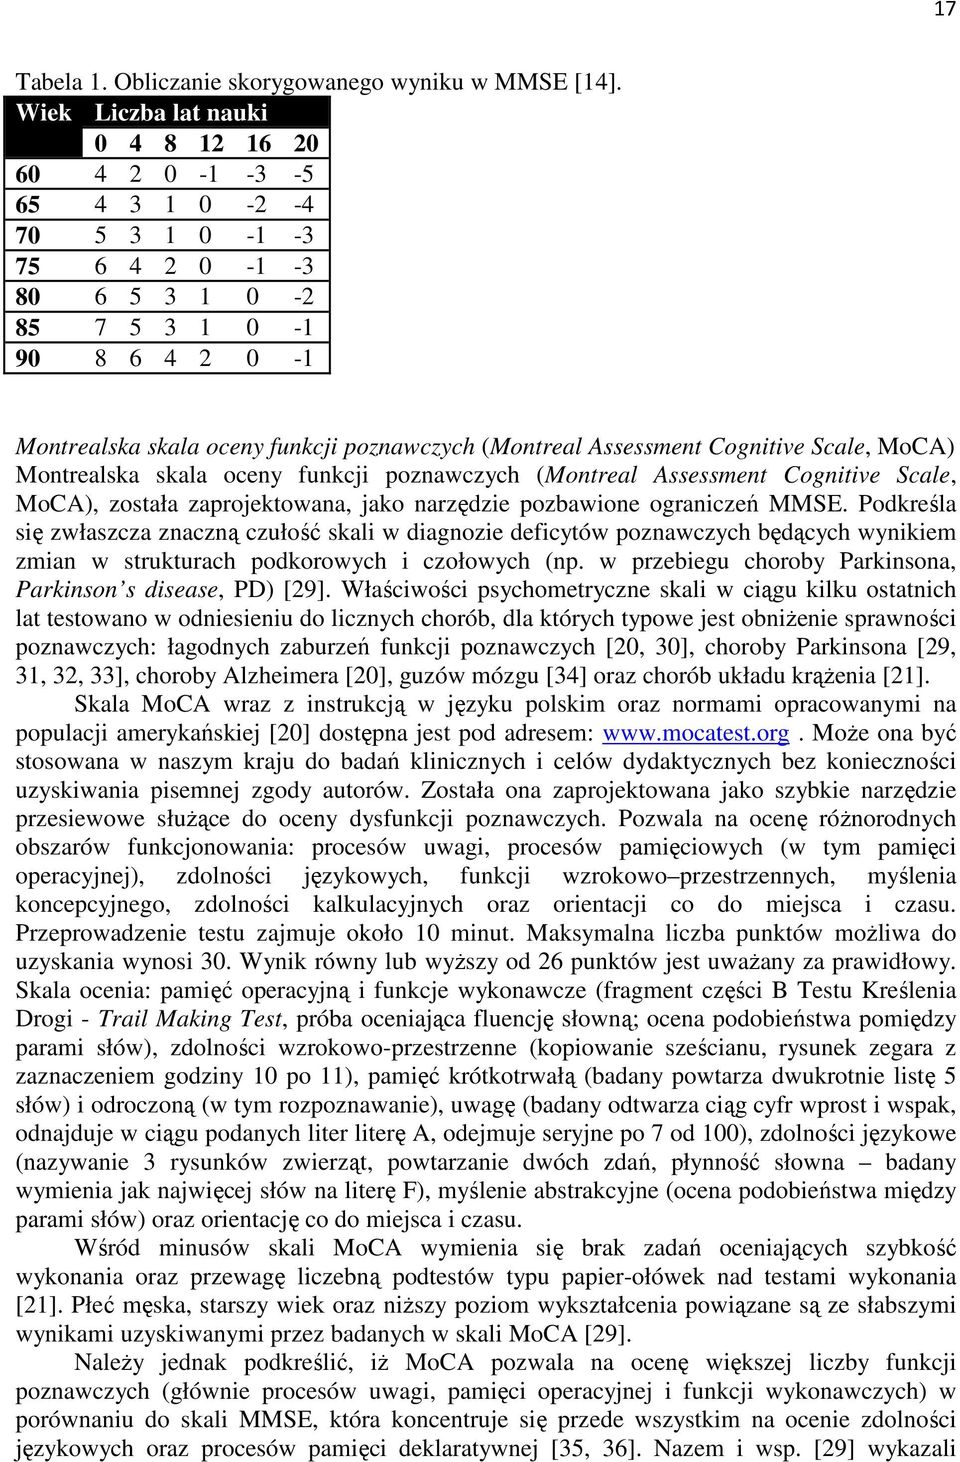 Assessment Cognitive Scale, MoCA) Montrealska skala oceny funkcji poznawczych (Montreal Assessment Cognitive Scale, MoCA), została zaprojektowana, jako narzędzie pozbawione ograniczeń MMSE.